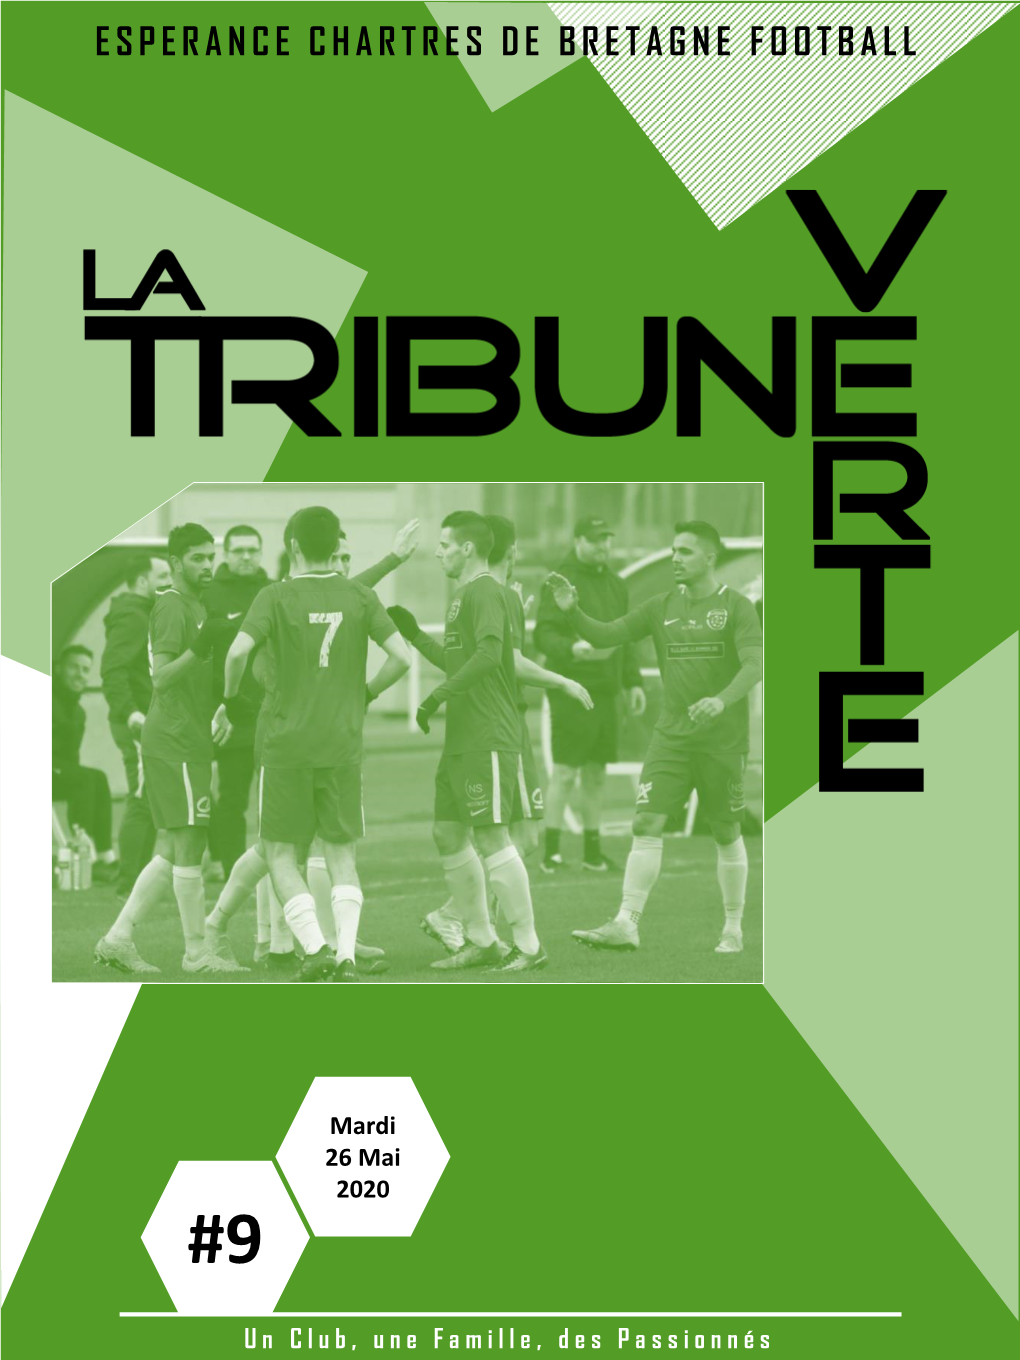 Esperance Chartres De Bretagne Football